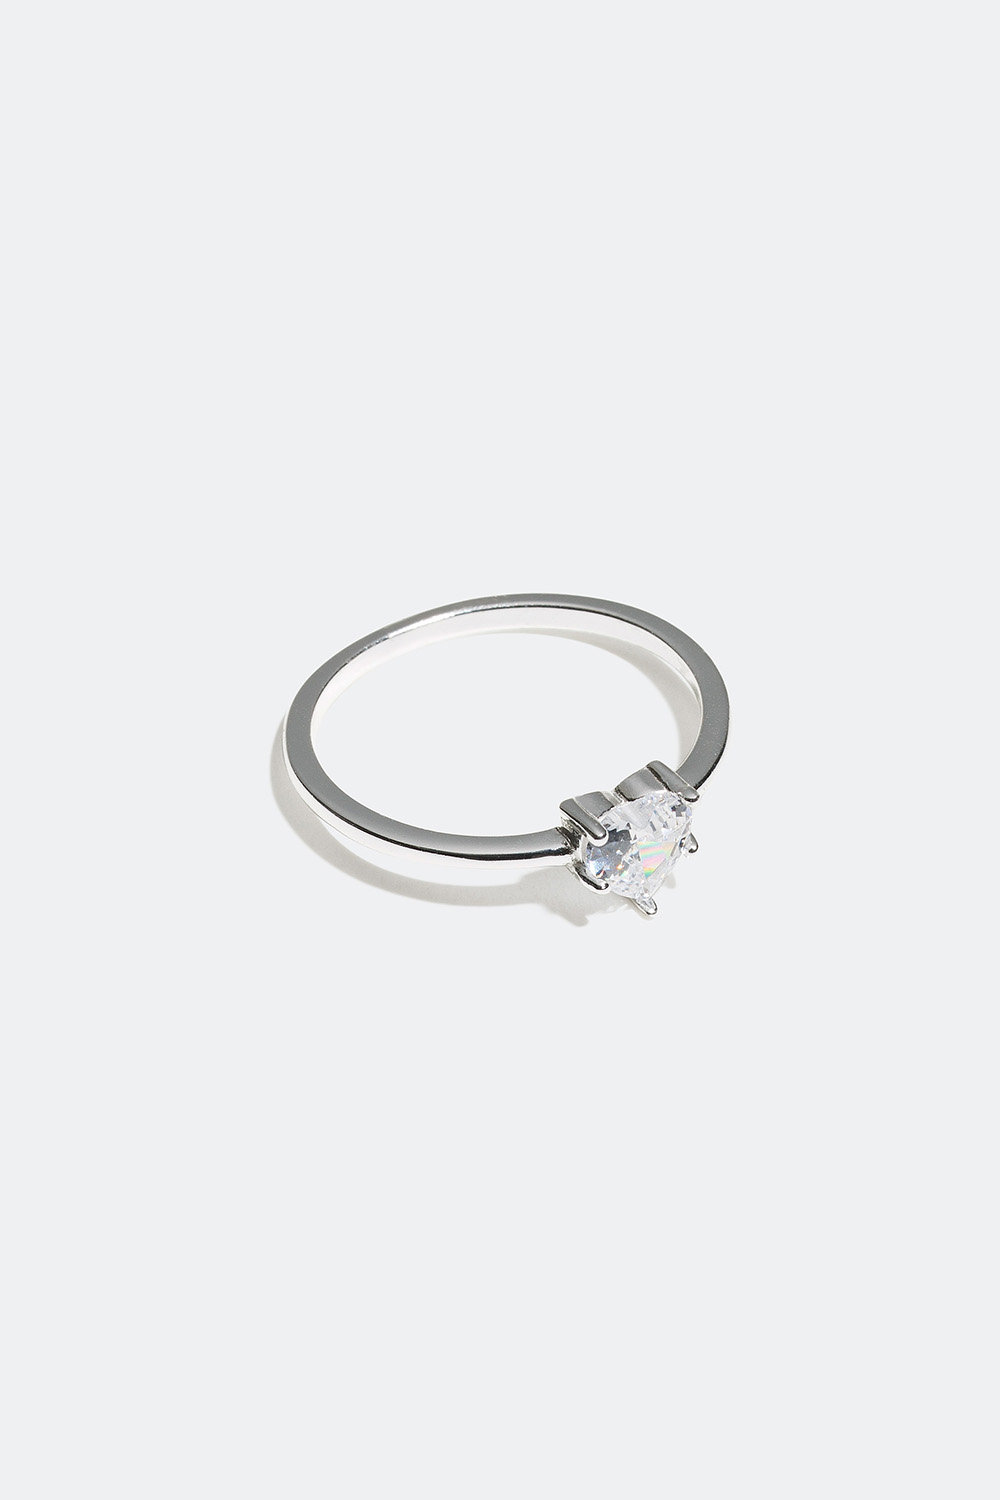 Smal sølvring med hjerteformet Cubic Zirconia-stein i gruppen Ekte sølv / Sølvringer / Sølv hos Glitter (55600005)